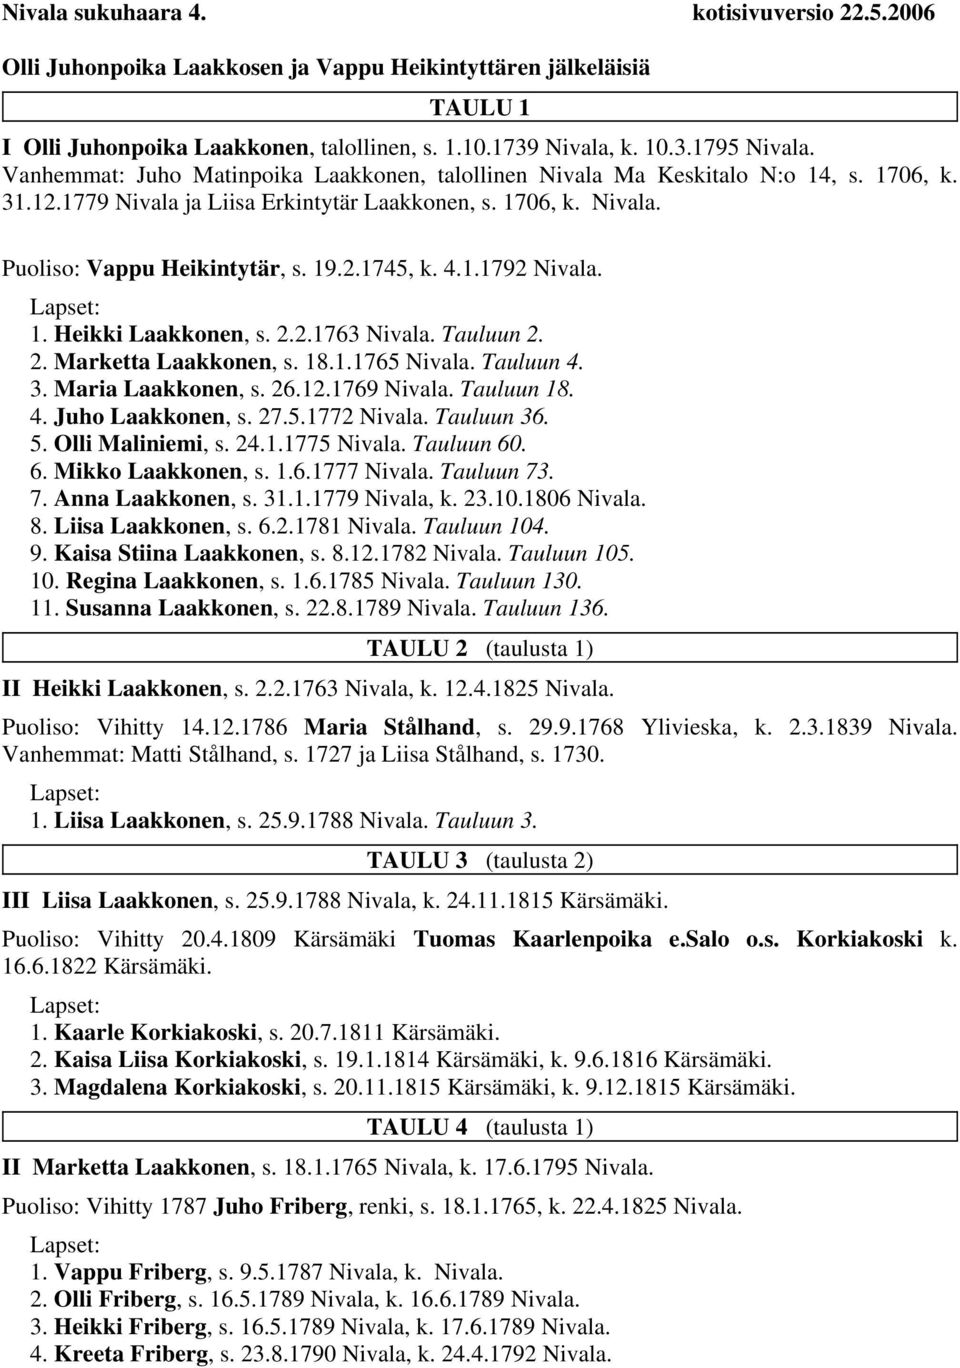 4.1.1792 Nivala. 1. Heikki Laakkonen, s. 2.2.1763 Nivala. Tauluun 2. 2. Marketta Laakkonen, s. 18.1.1765 Nivala. Tauluun 4. 3. Maria Laakkonen, s. 26.12.1769 Nivala. Tauluun 18. 4. Juho Laakkonen, s.